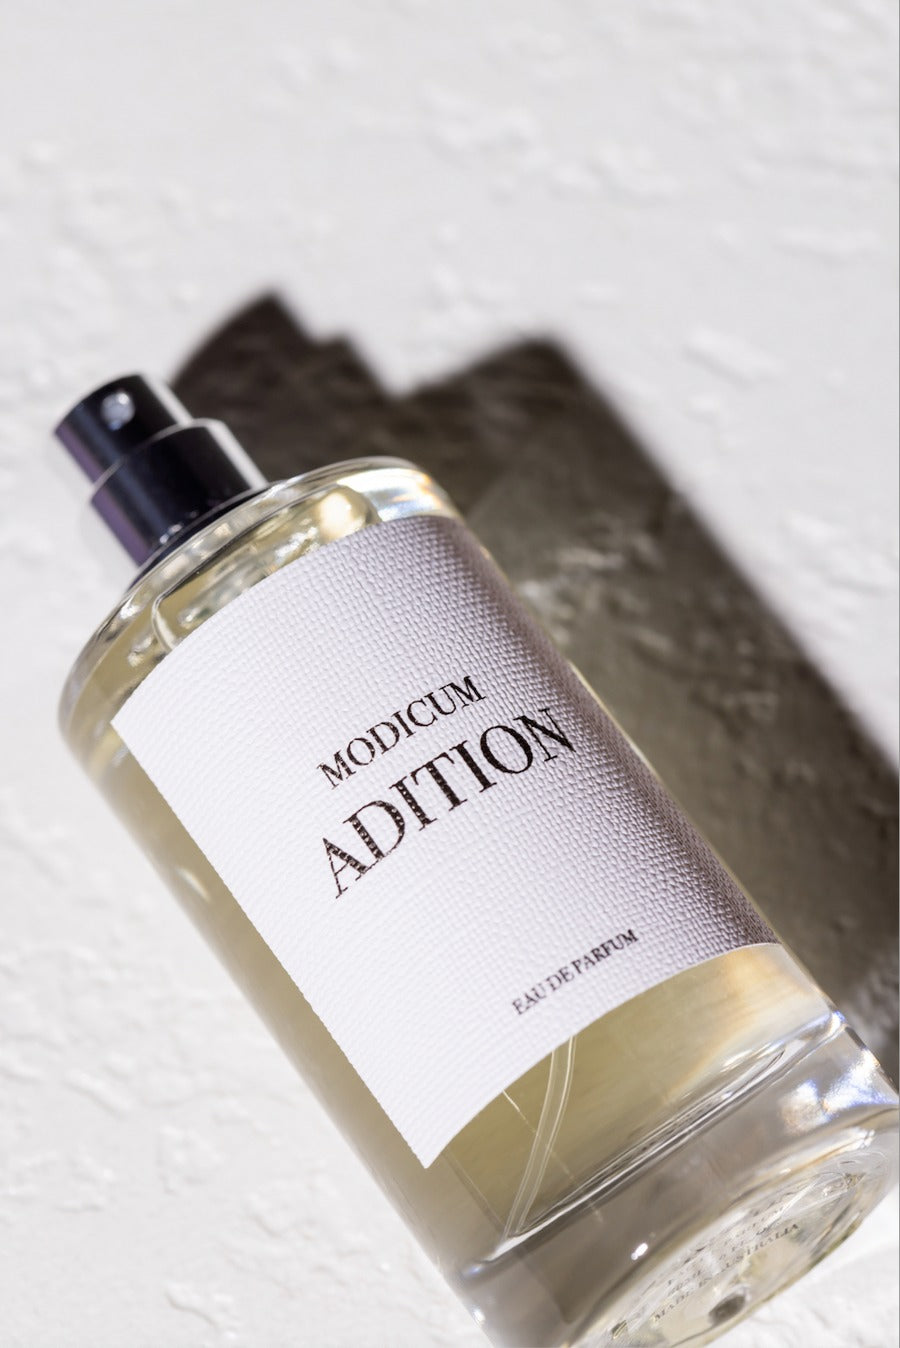 Adition Parfums | Modicum Eau De Parfum 50ml